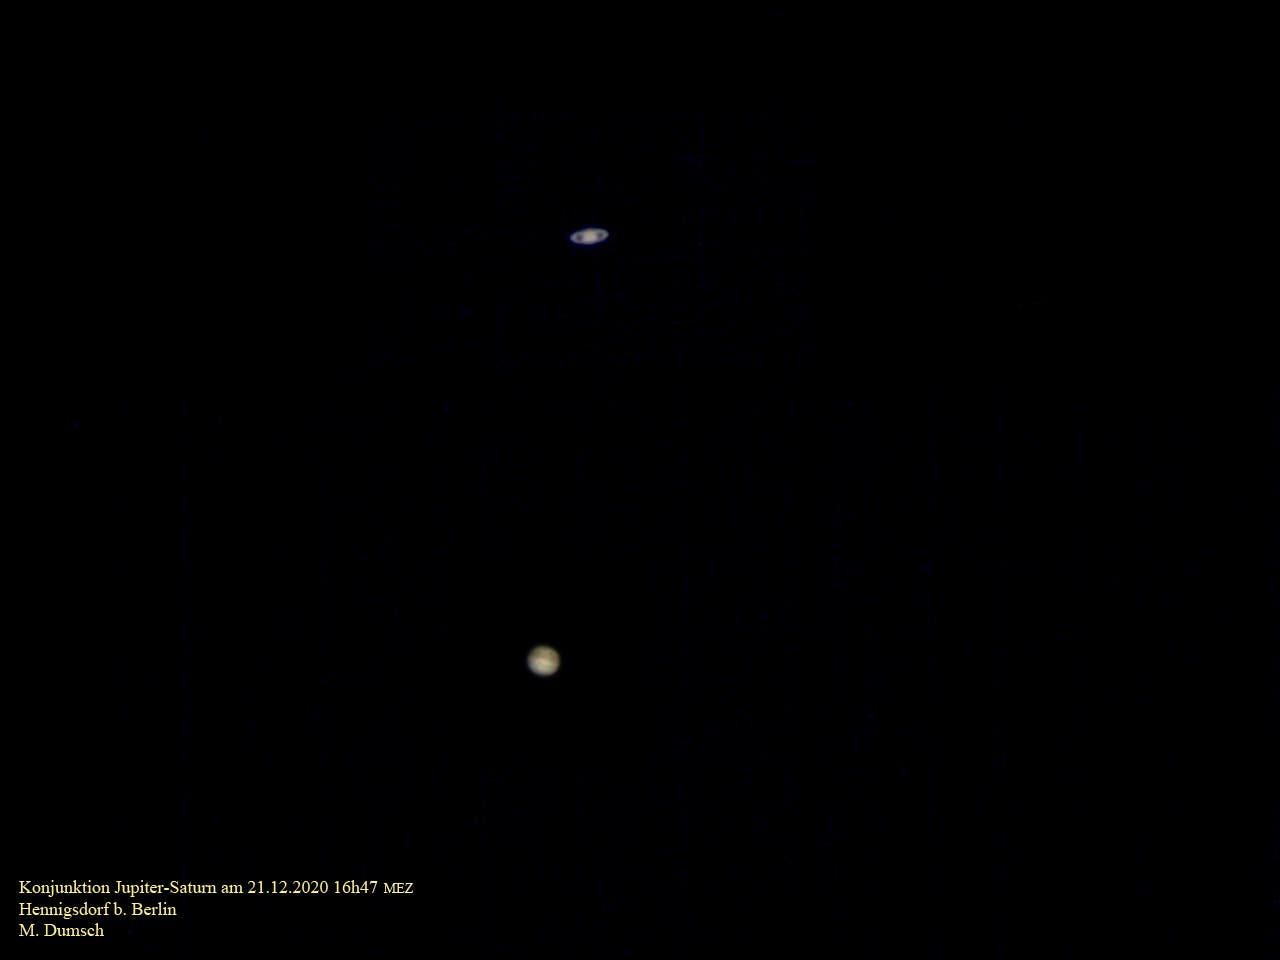 Konjunktion Jupiter-Saturn am 21. Dezember 2020 - Korrektur